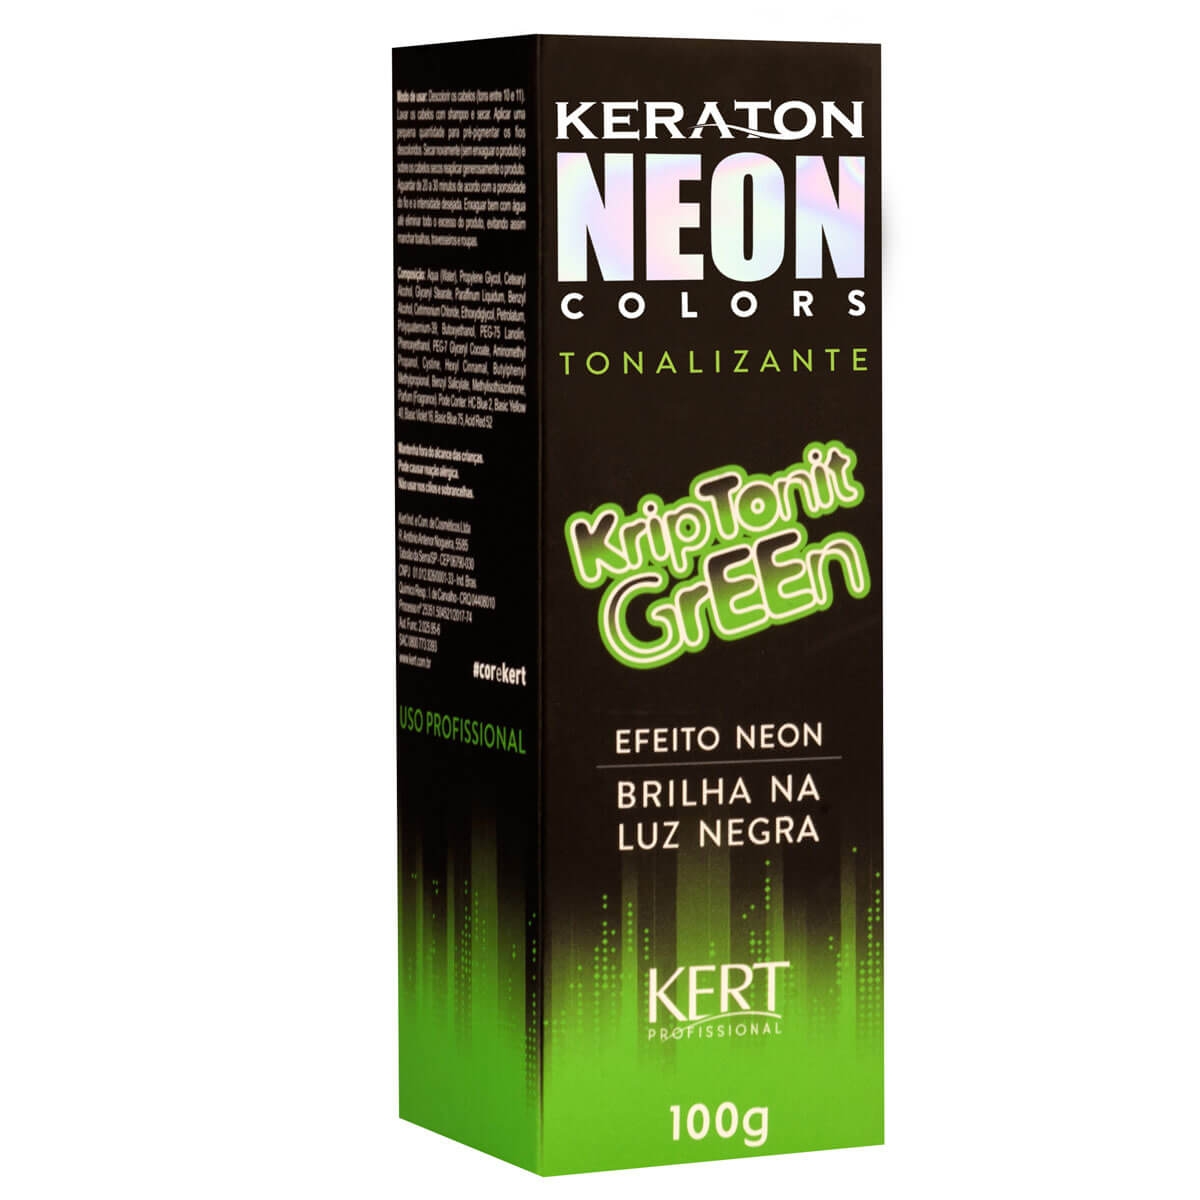 Tonalizante Keraton Neon Colors Kriptonit Green com 100g 100g